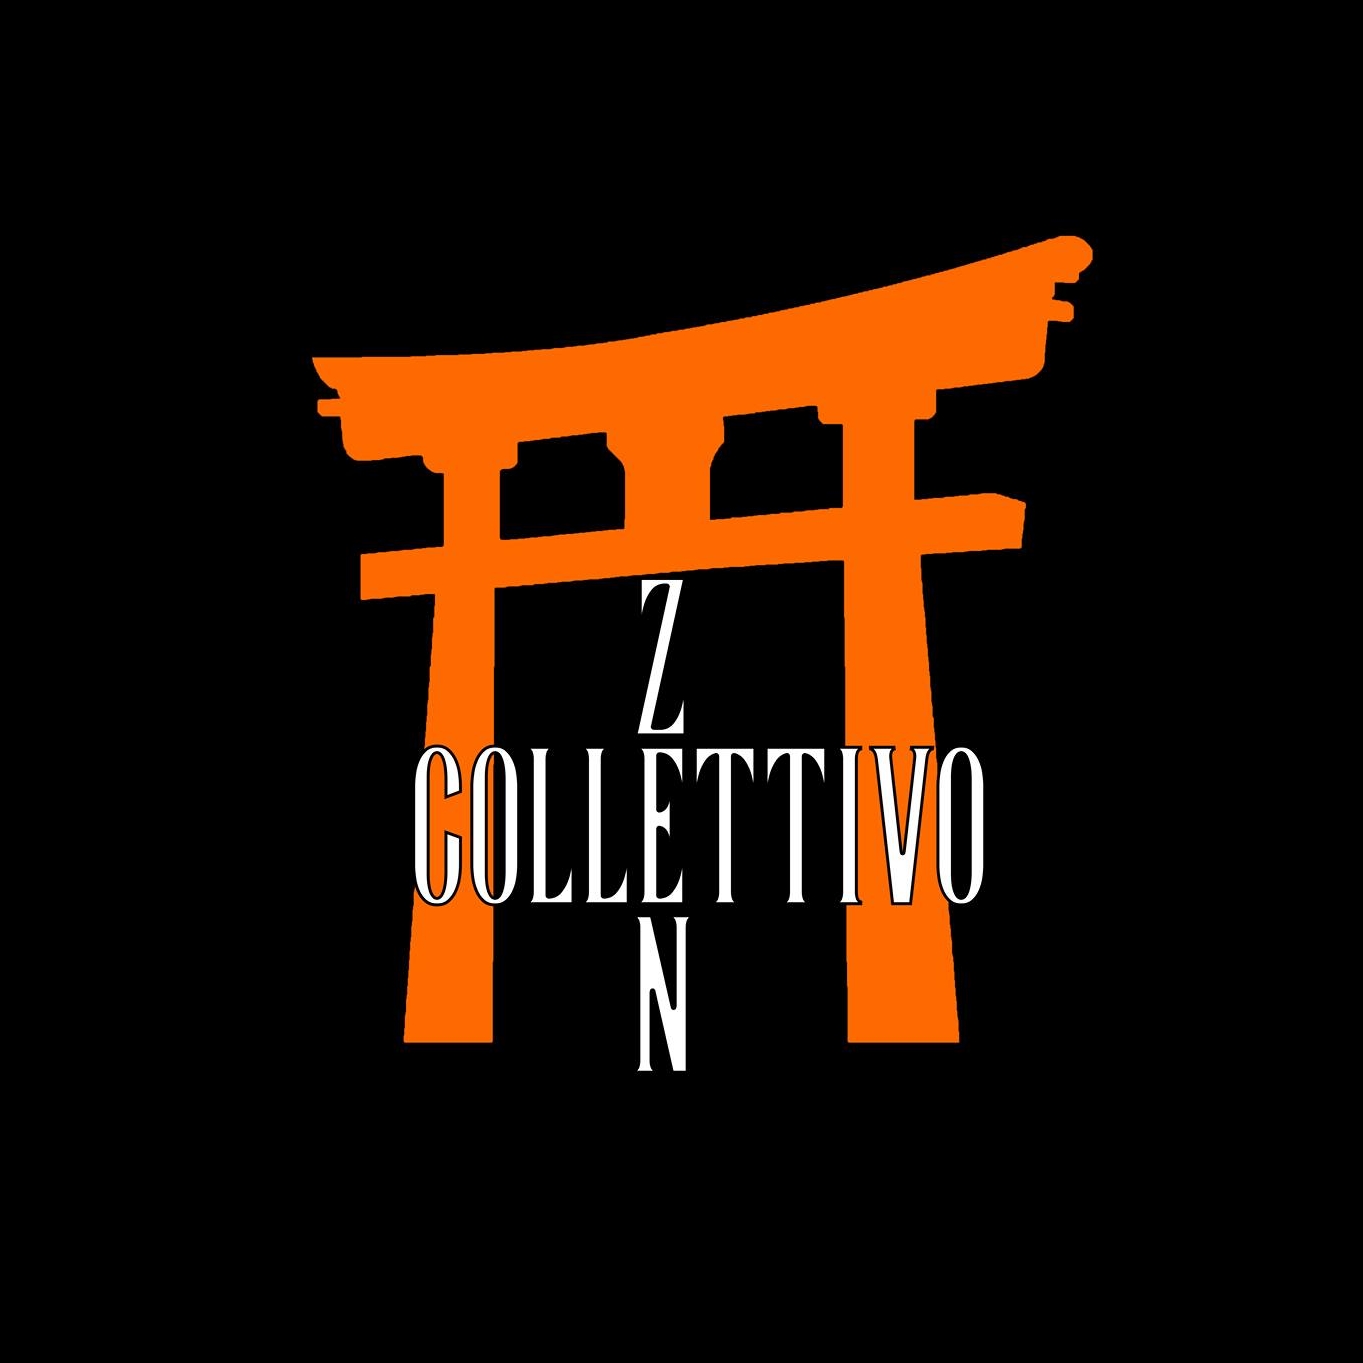 Zen Collettivo dà vita alla prima pubblicazione ufficiale